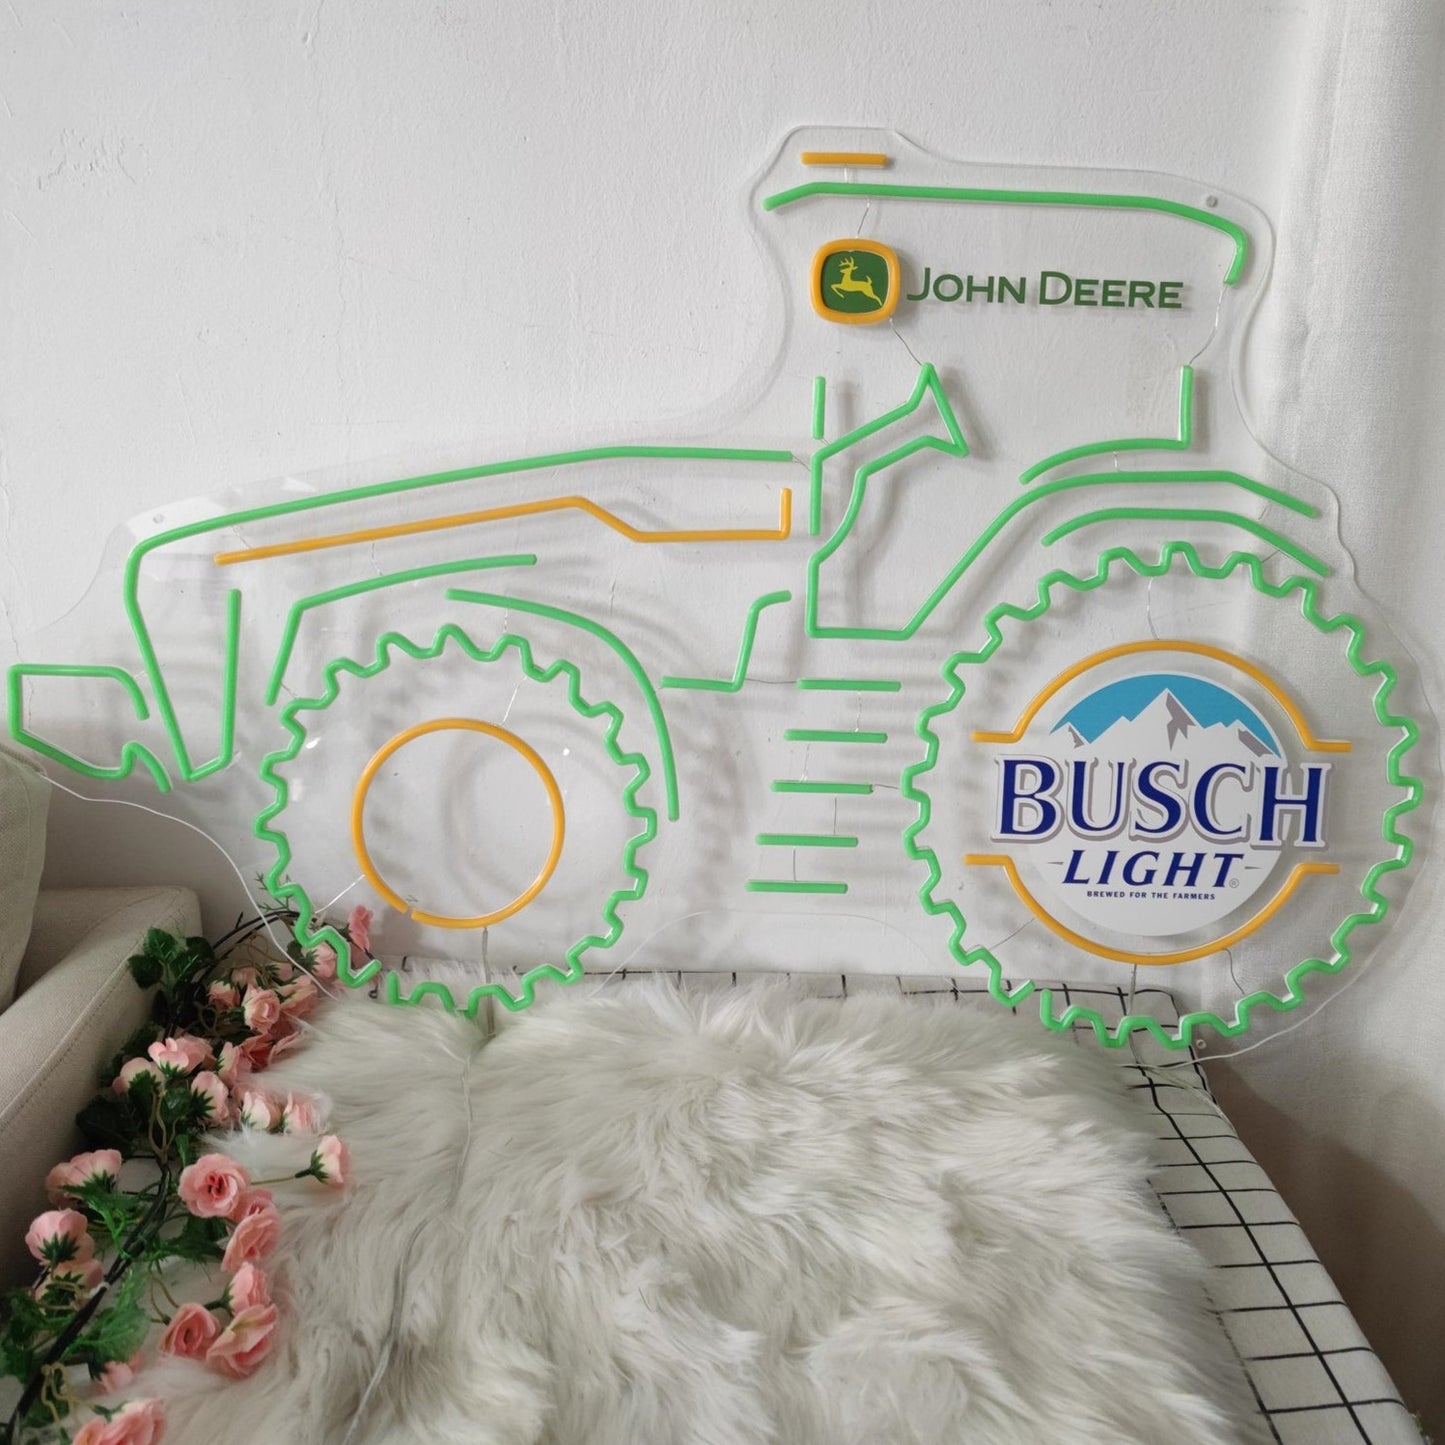 John Deere Busch Light Neon Sign